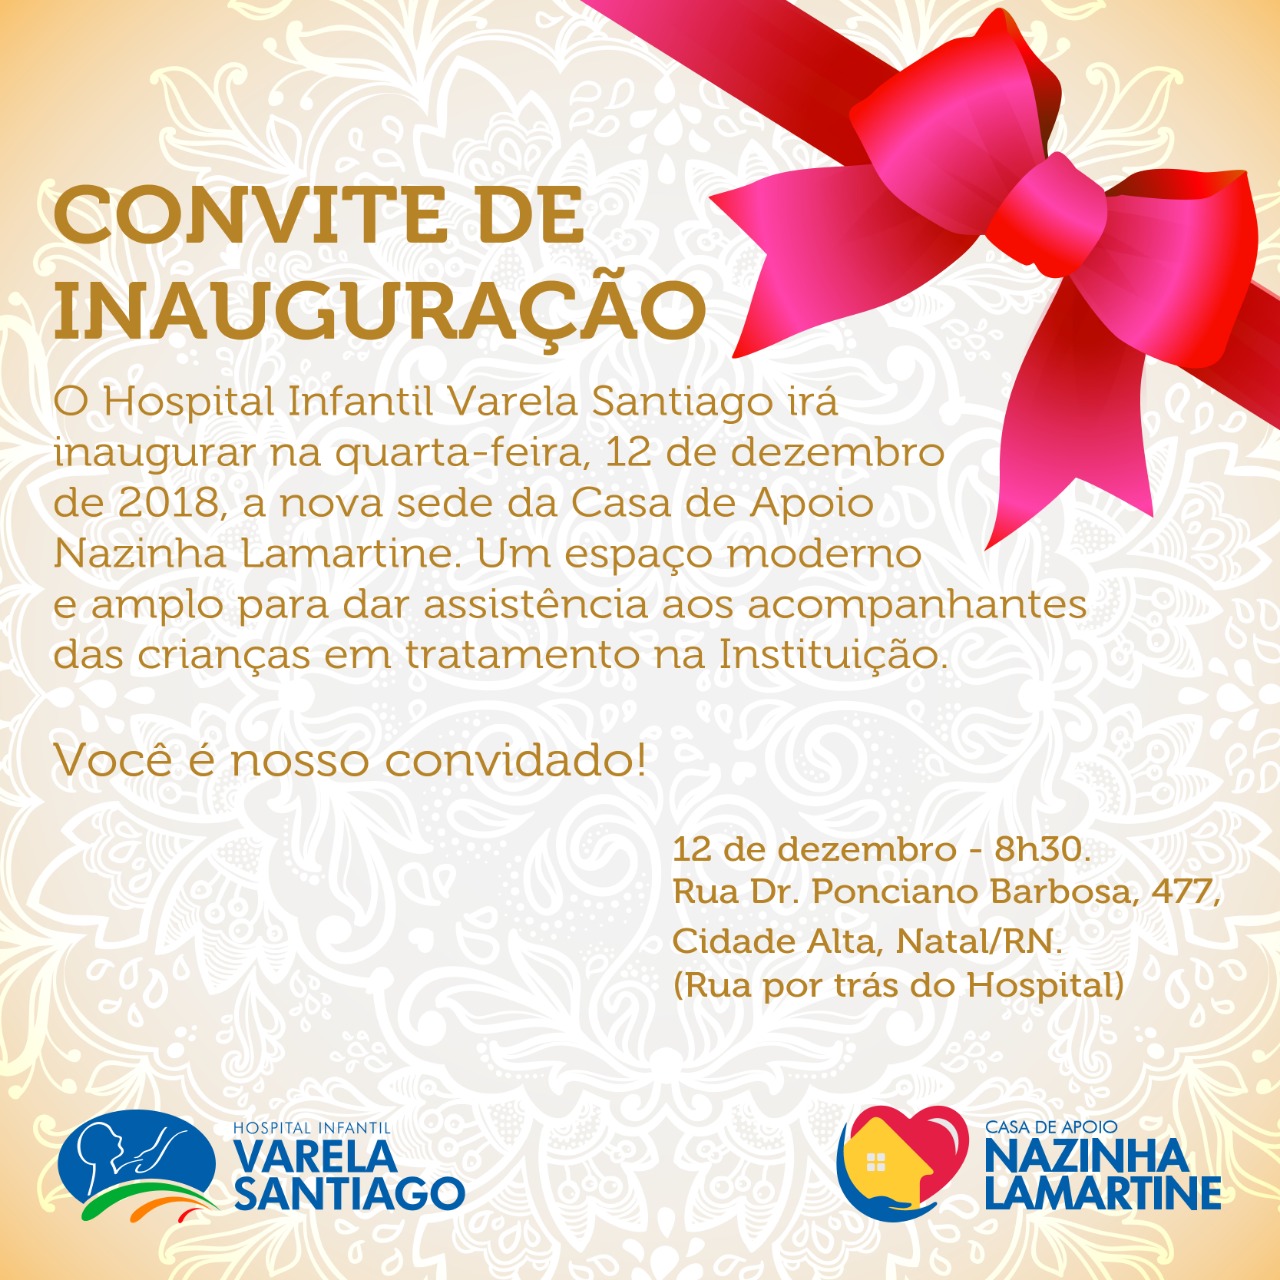 Hospital Infantil Varela Santiago inaugura nova sede da casa de apoio Nazinha Lamartine